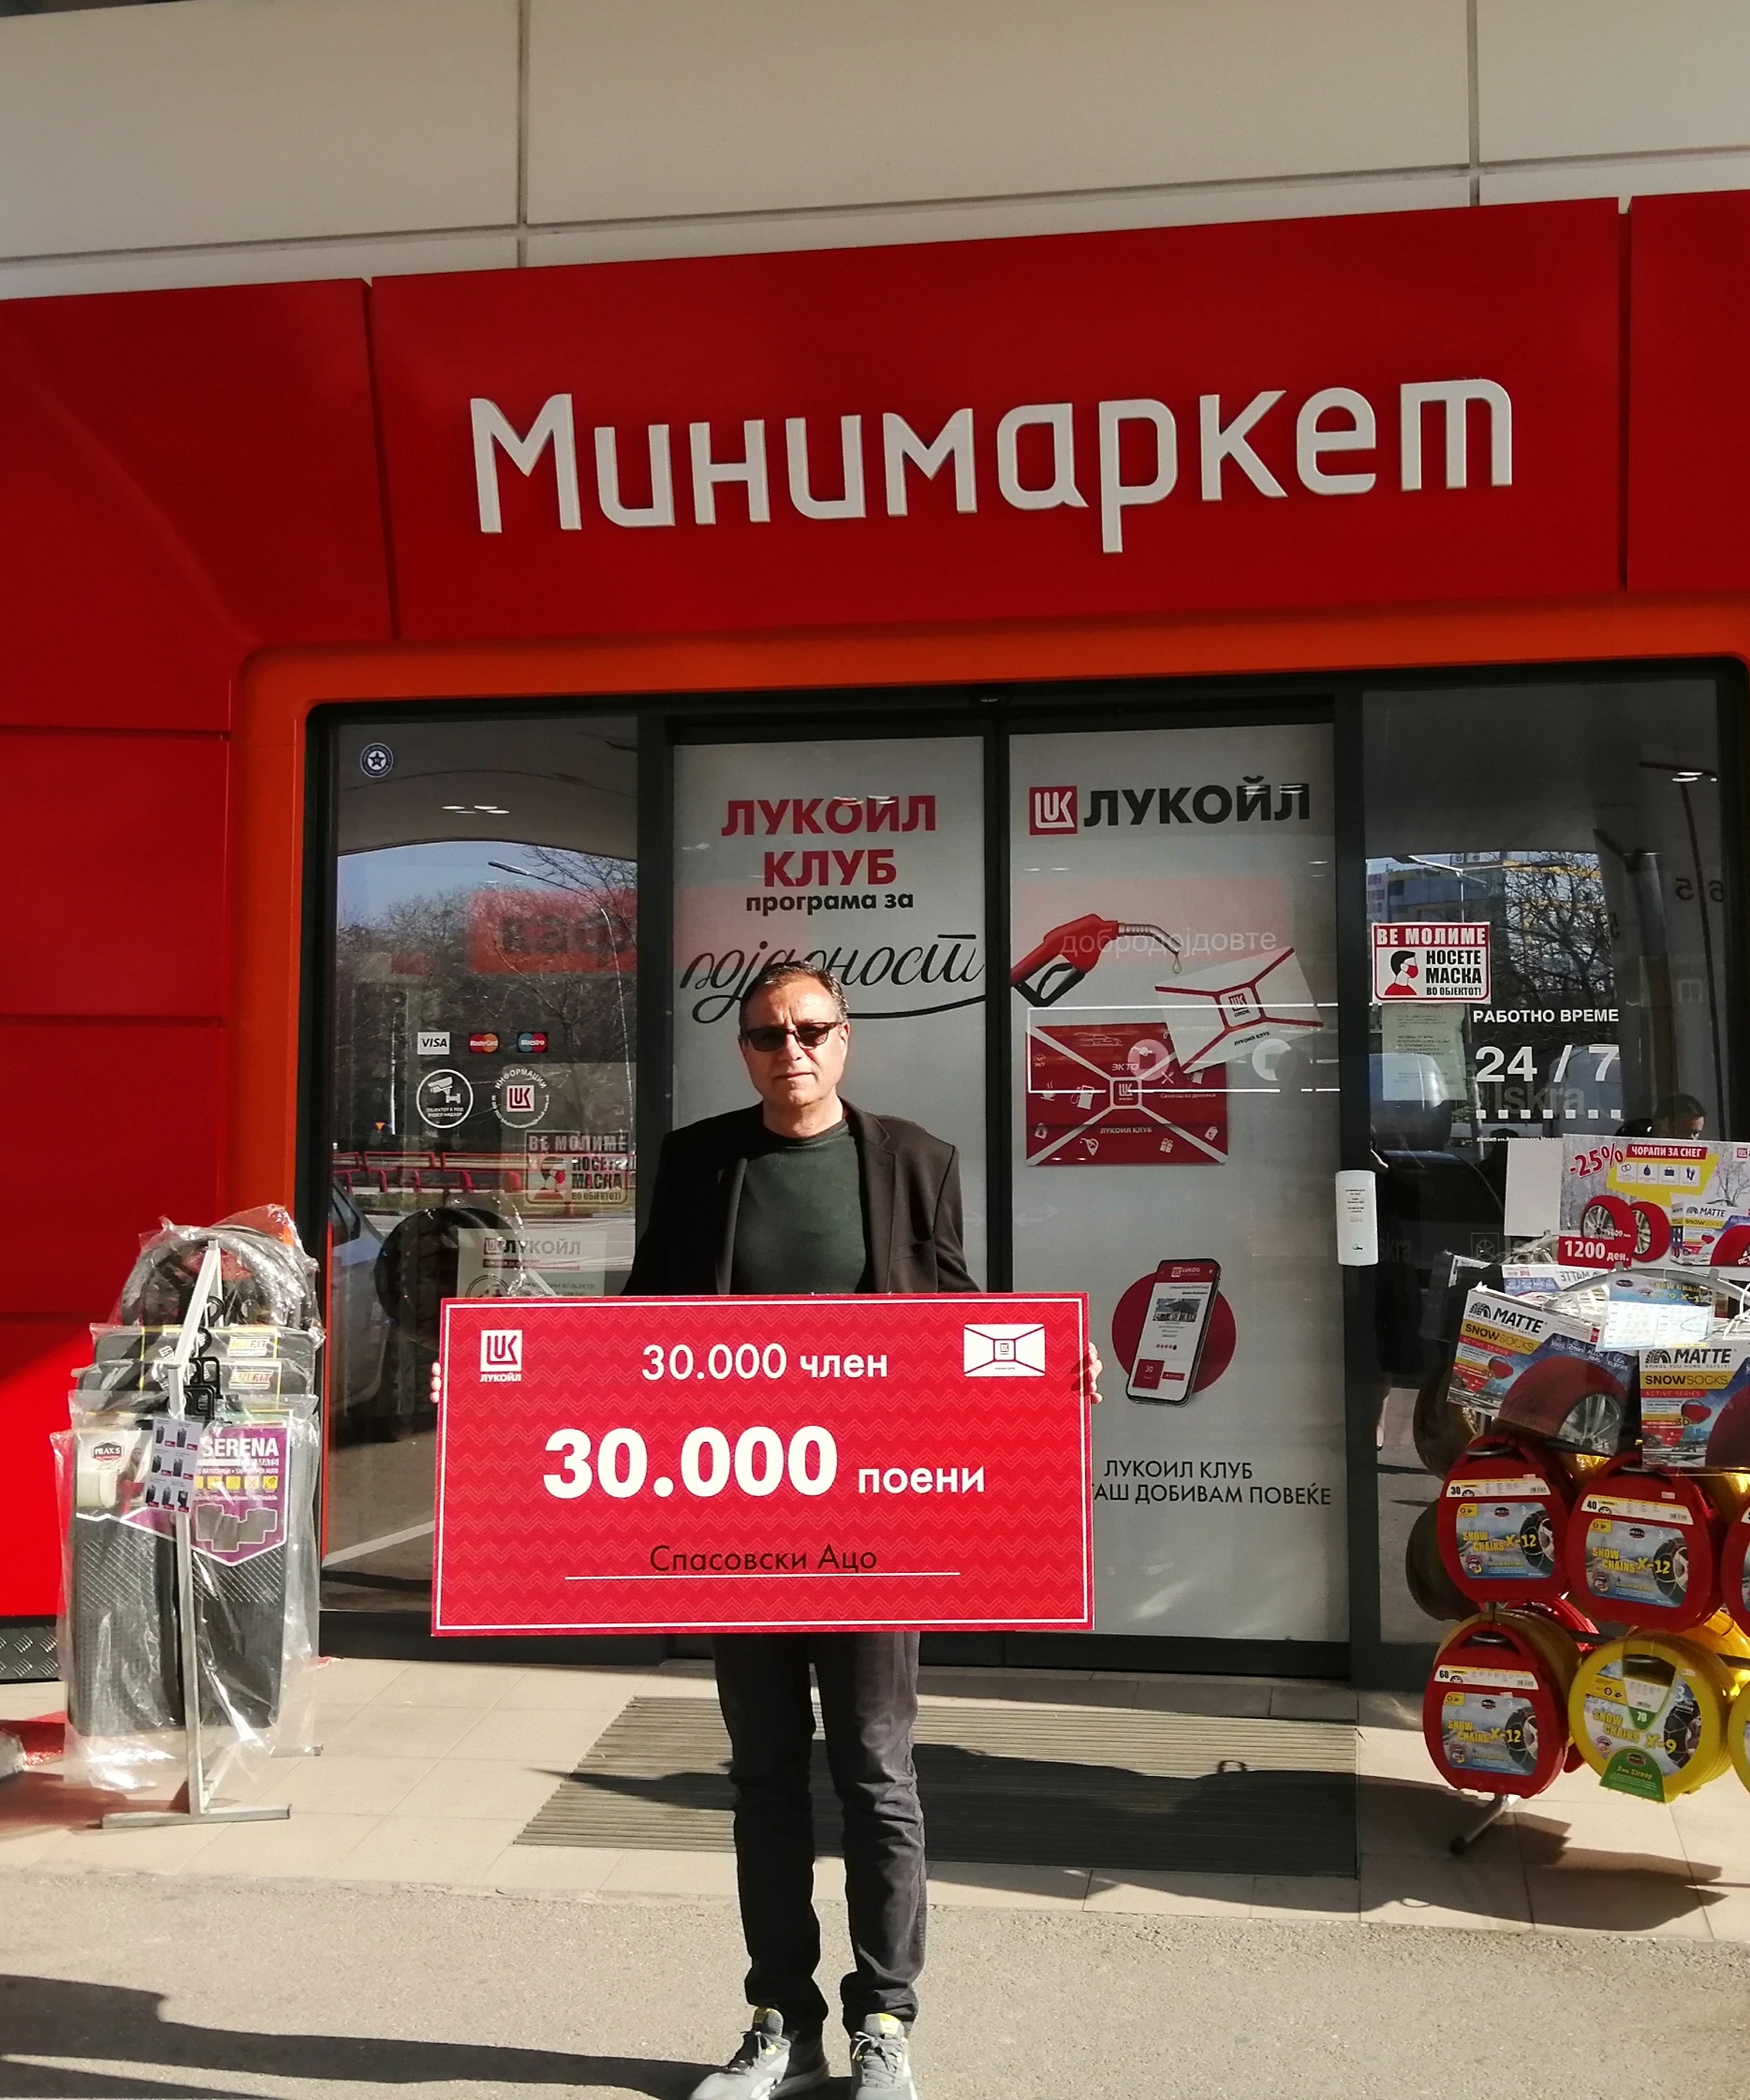 Lukoil Maqedoni ndan 30 mijë denarë për anëtarin e 30 mijë të “Lukoil Klub”